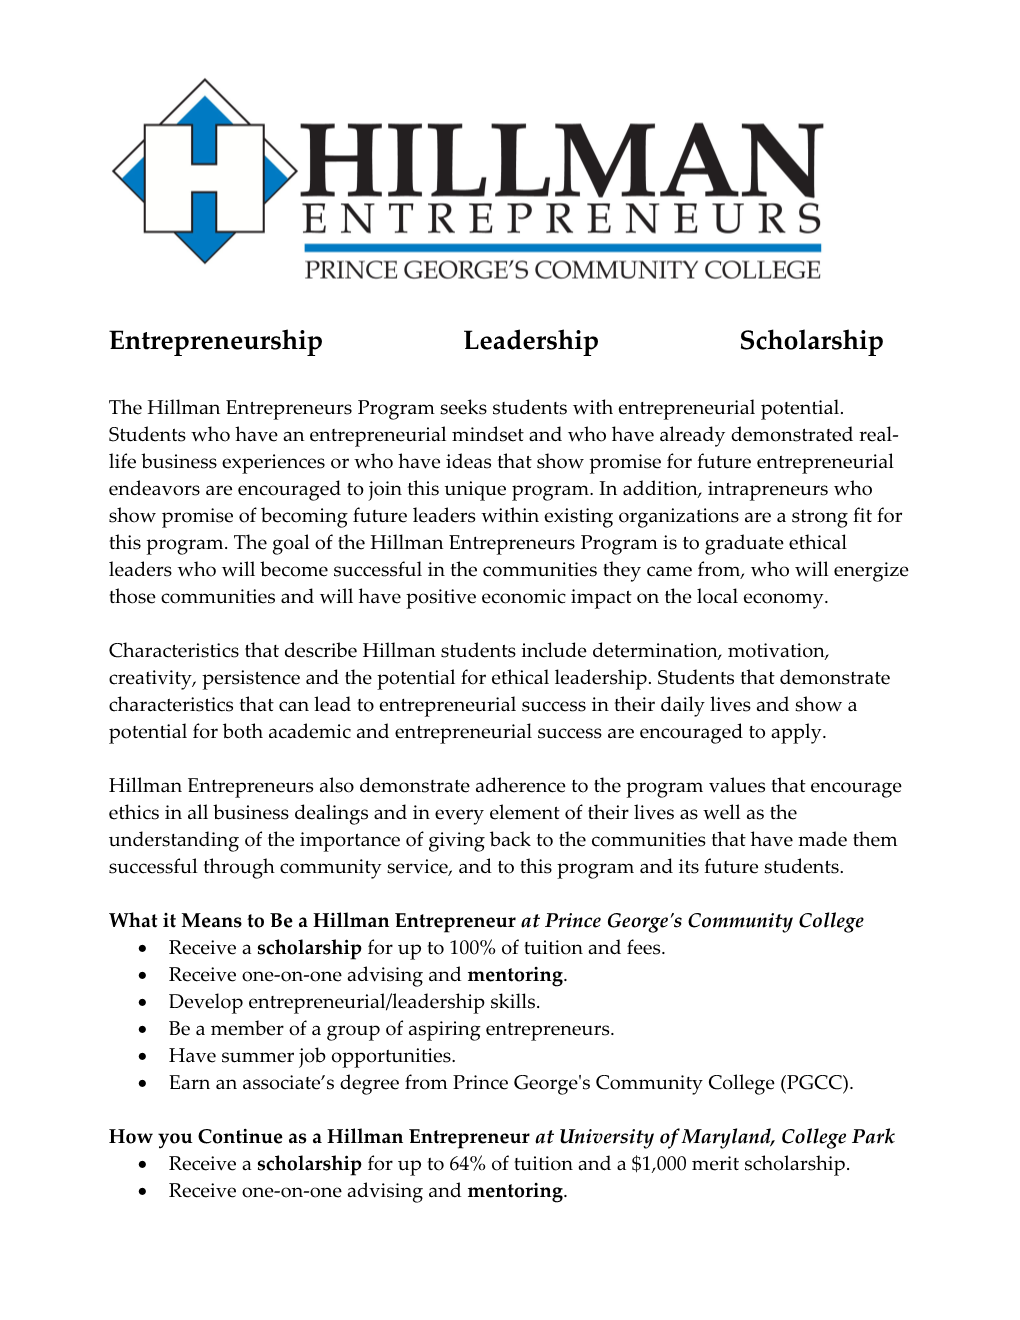 The Hillman Entrepreneurs Program